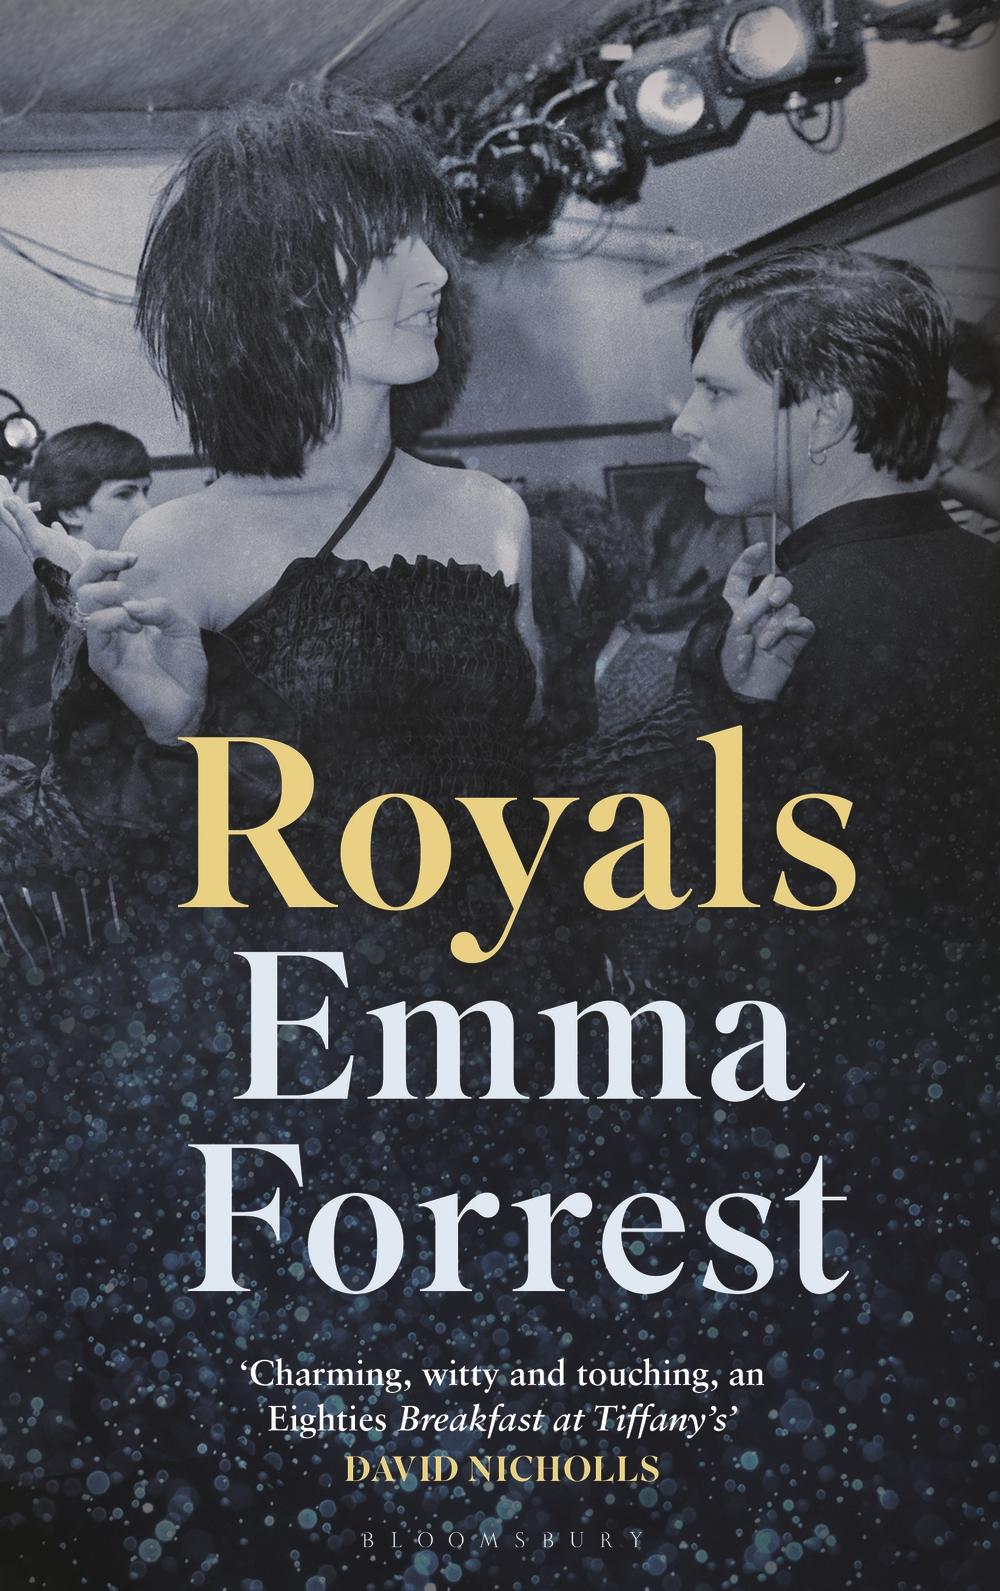 Royals - Emma Forrest